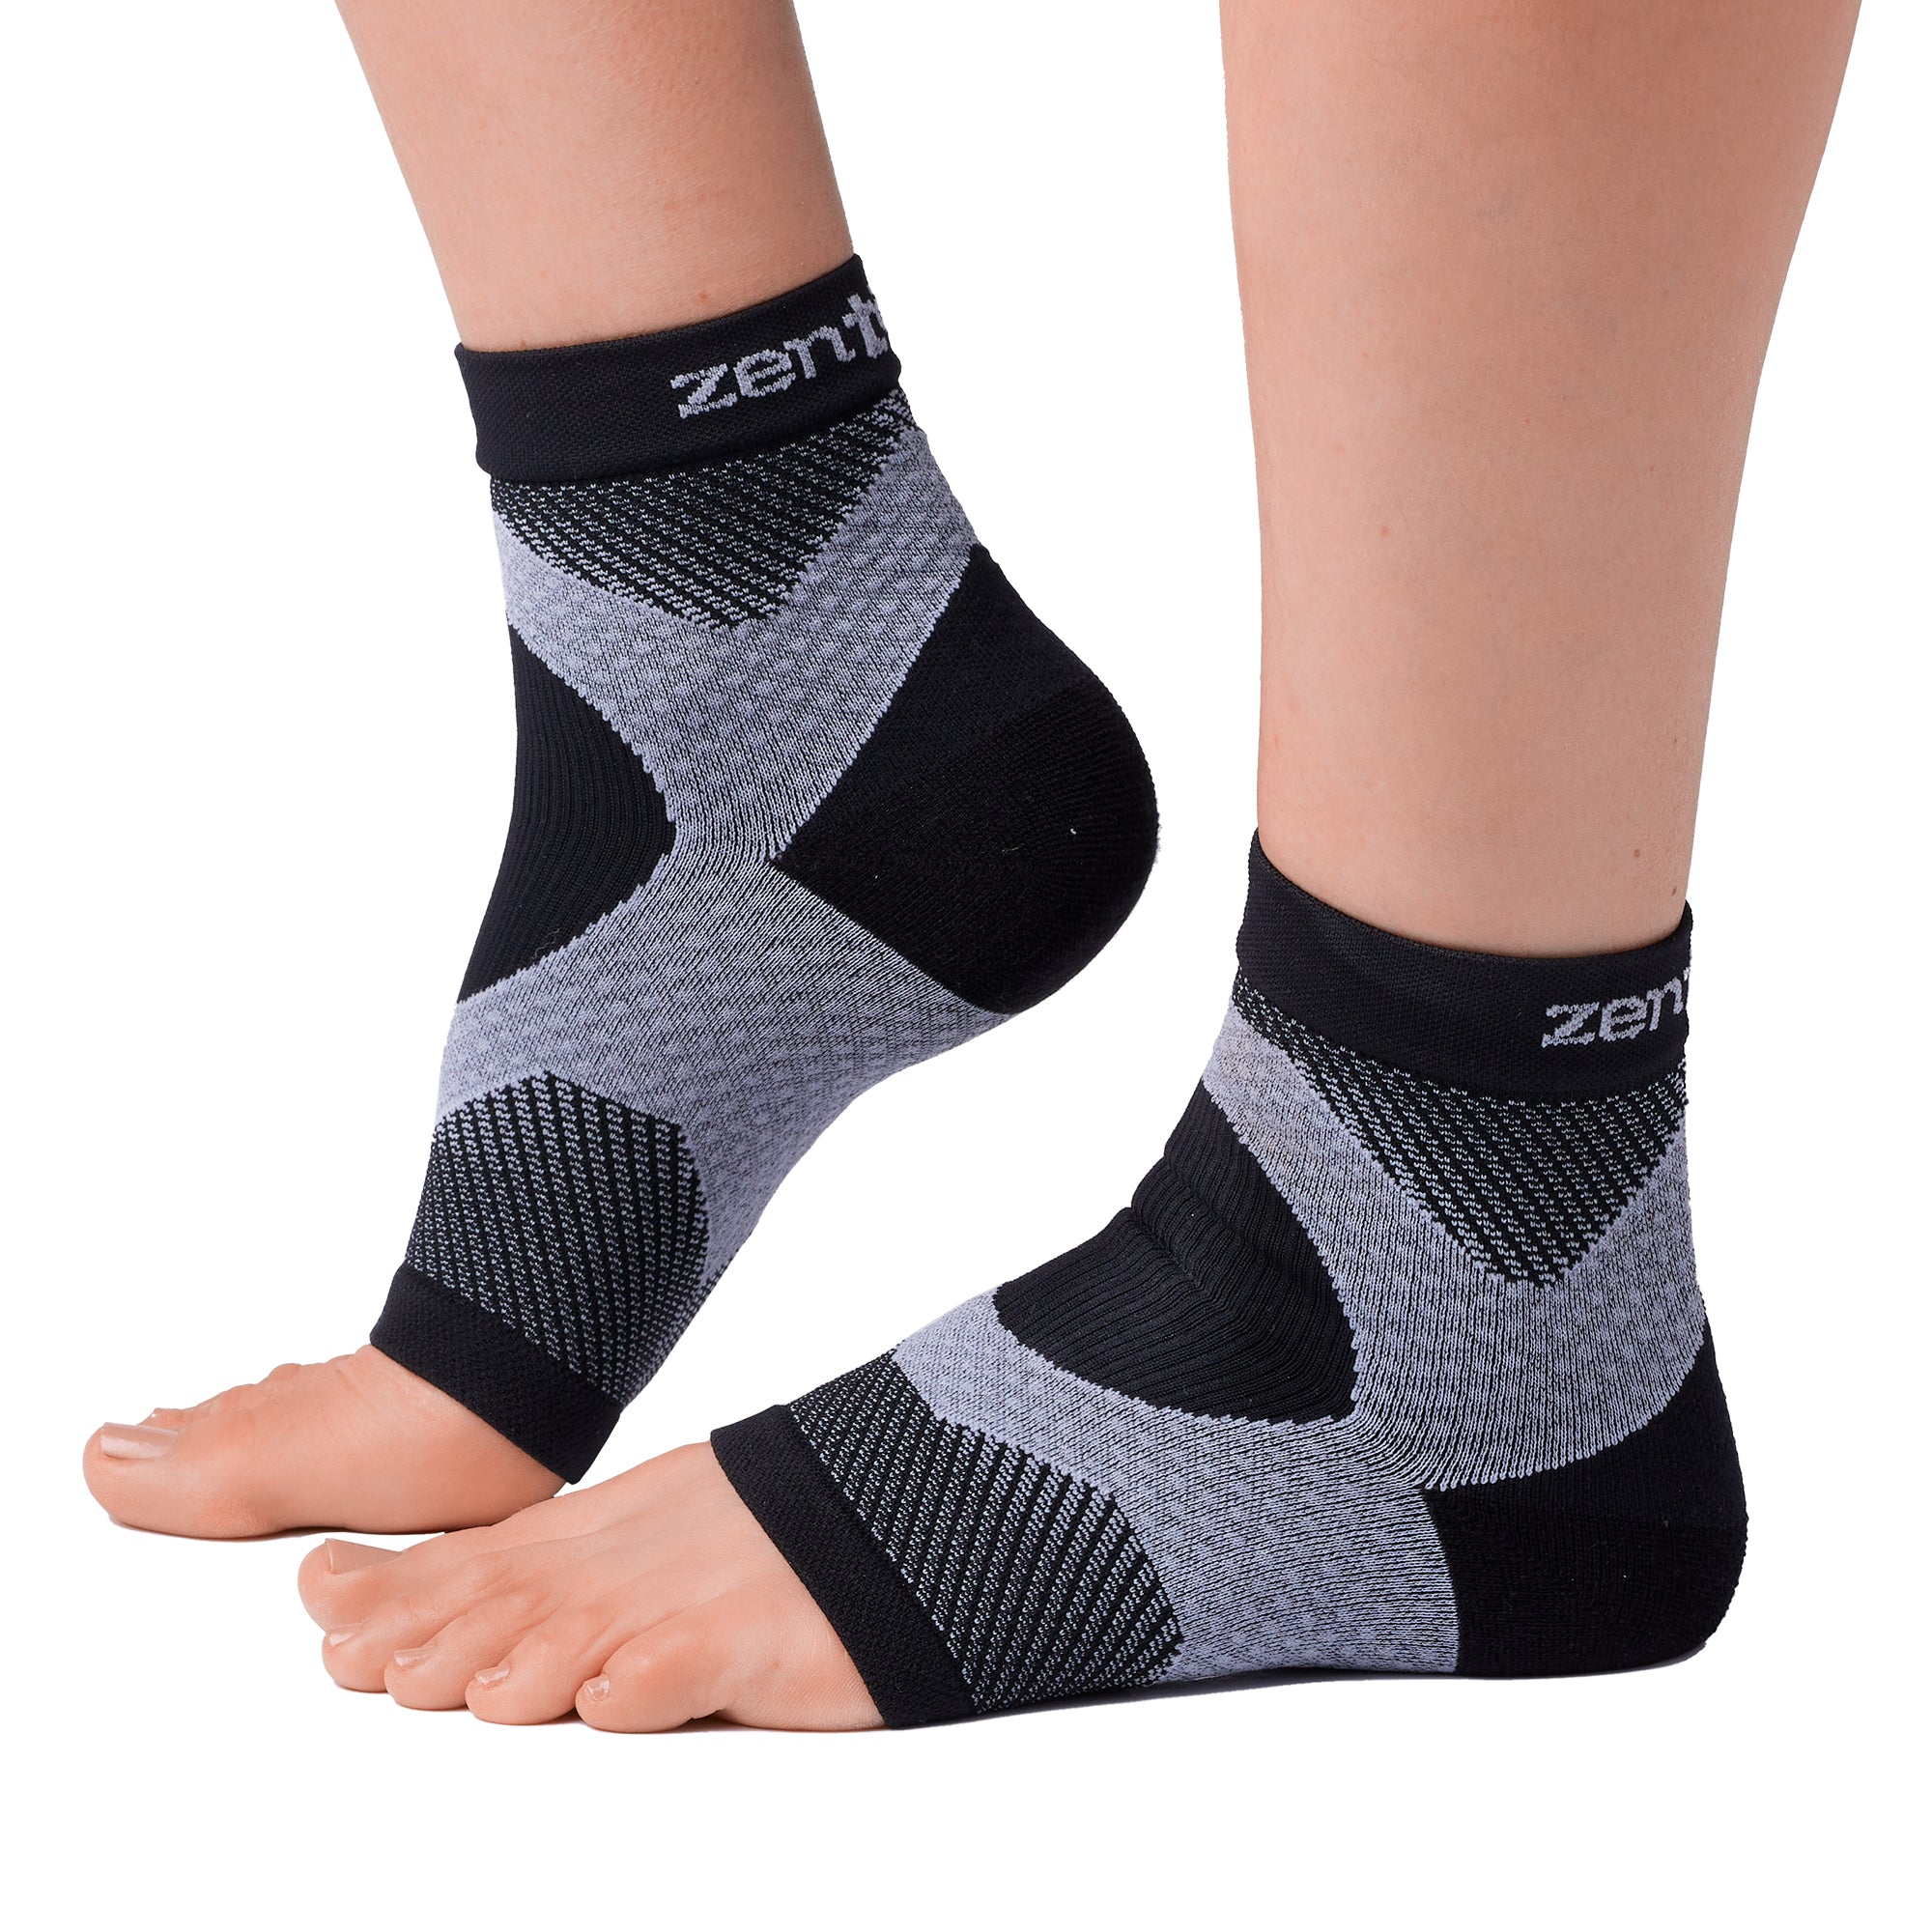 Flip Flop Socks, Knit Pedicure Socks, Knit Toeless Socks, Heel